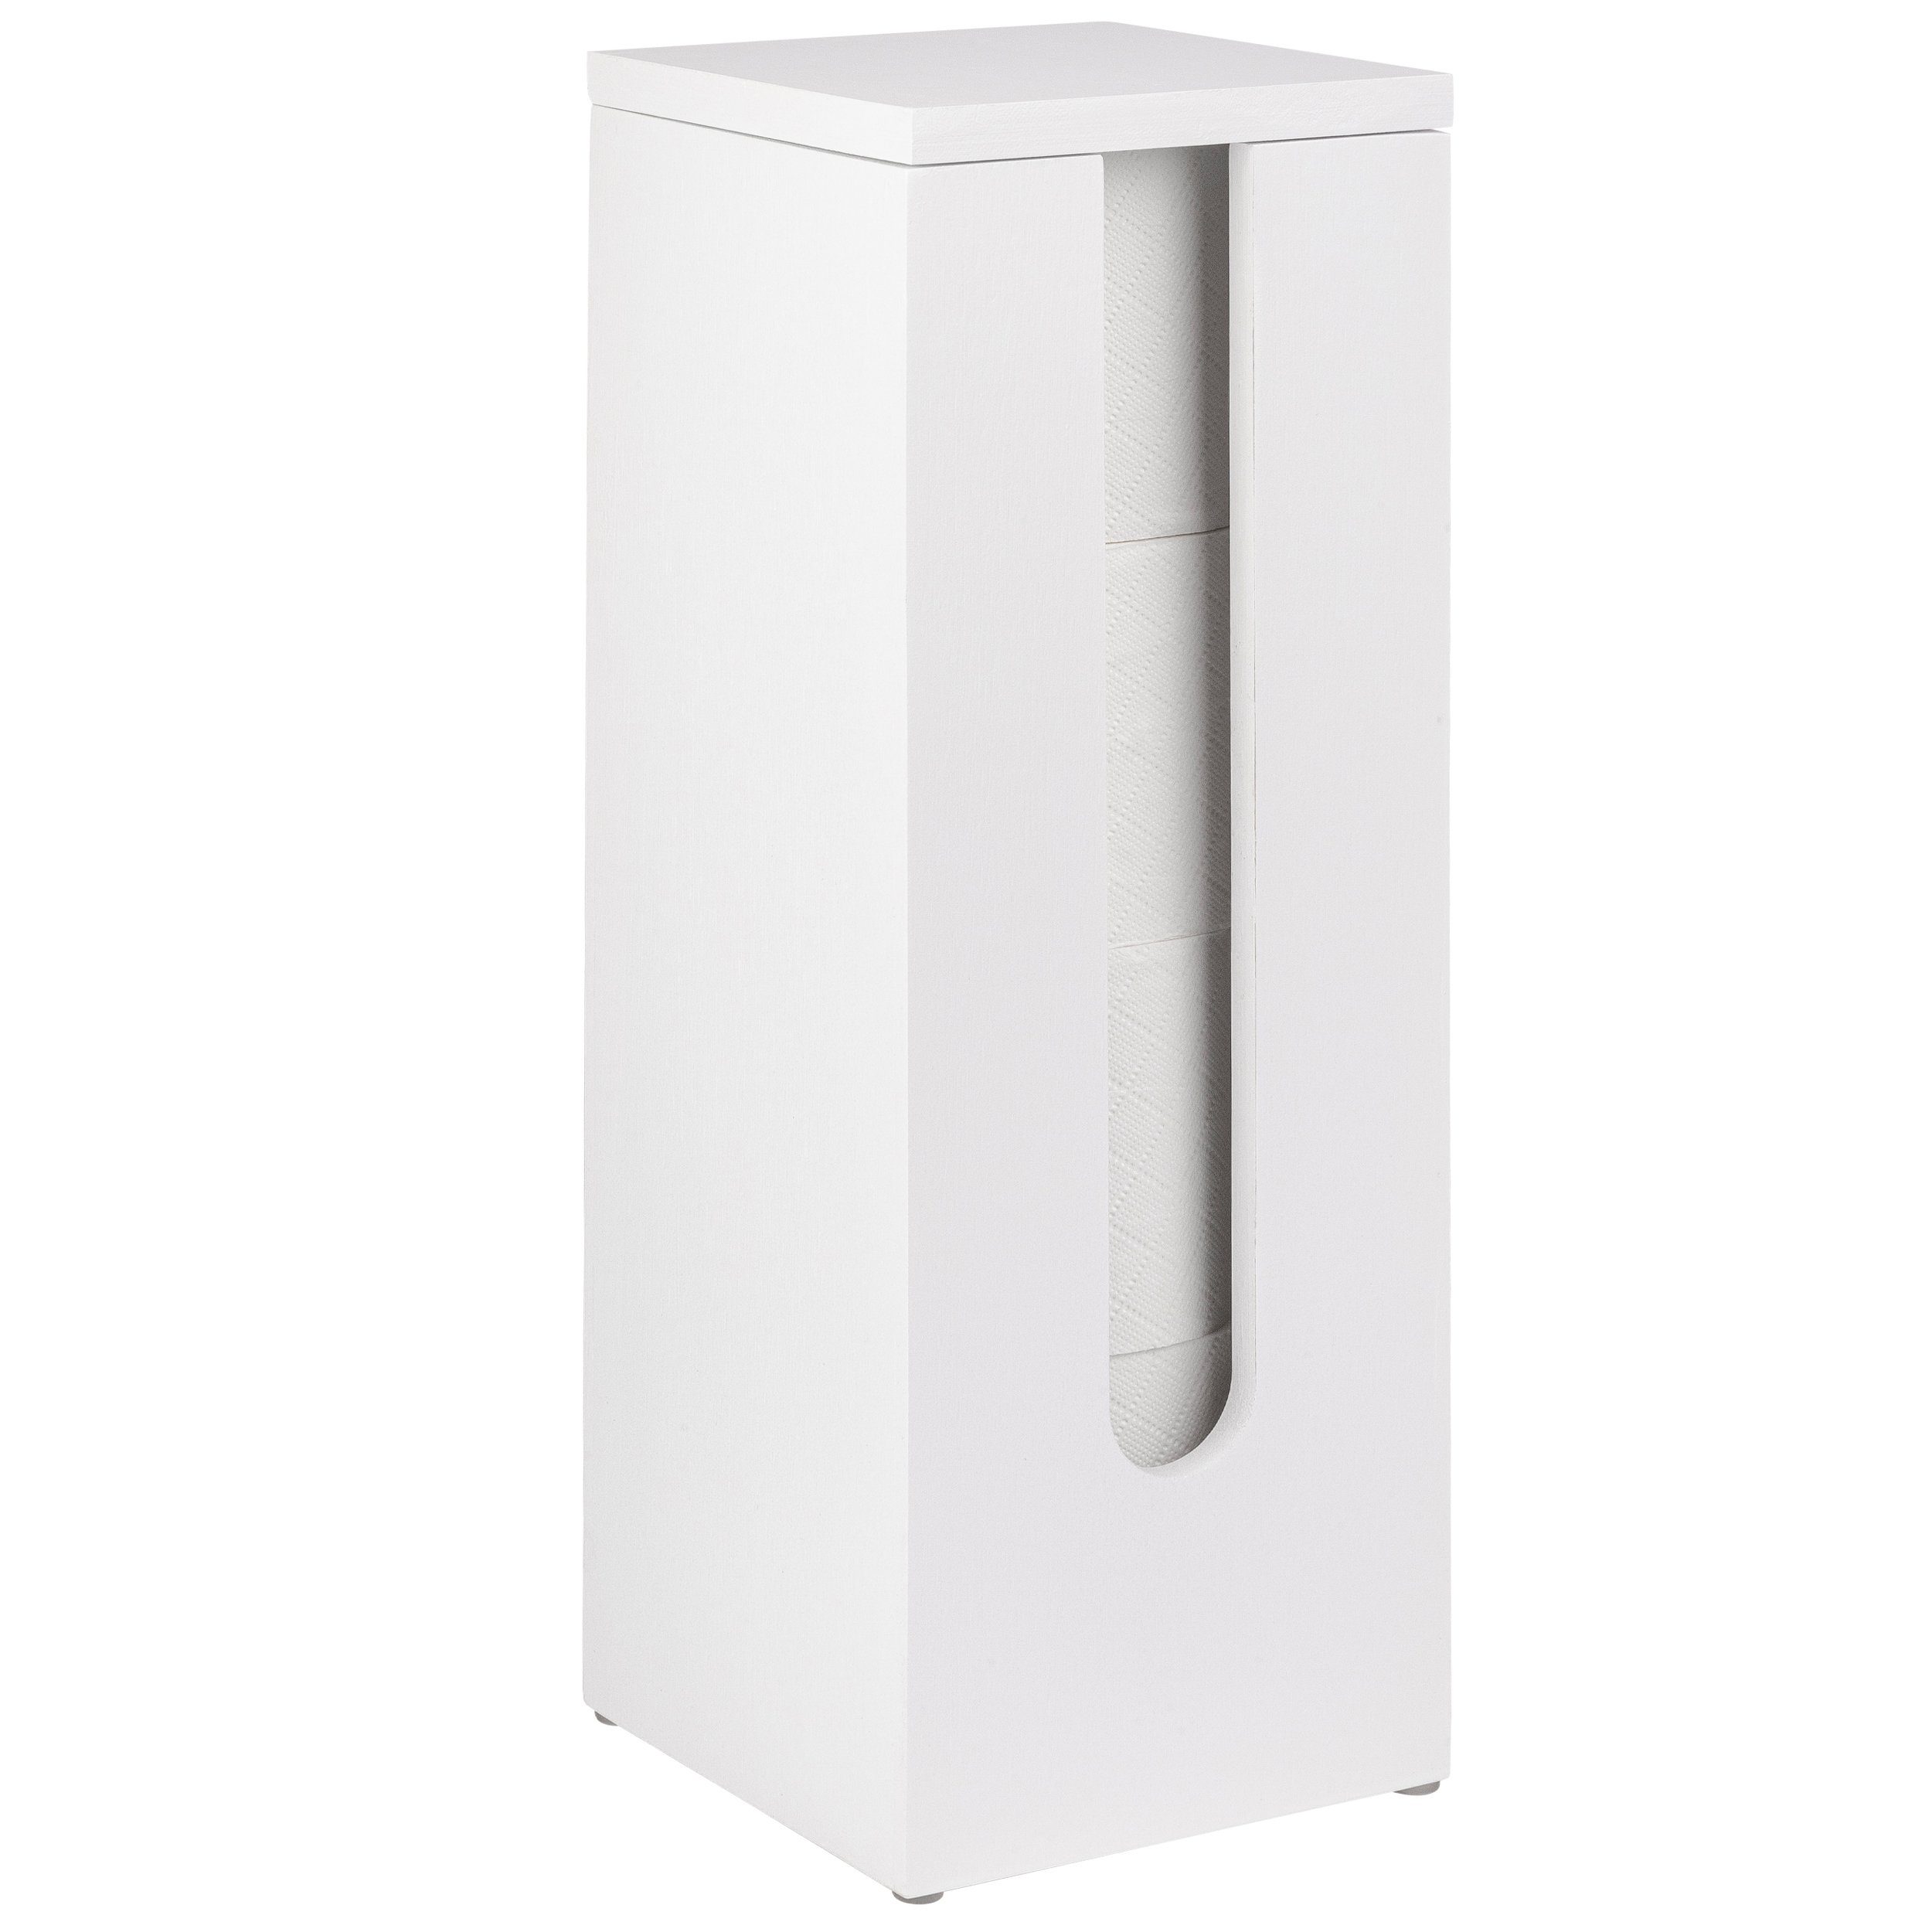 ONVAYA Toiletten-Ersatzrollenhalter »Toilettenpapier Aufbewahrung aus  Bambus für bis zu 4 Rollen, Stehender Ersatzrollenhalter in Weiß mit Deckel  und Griff« online kaufen | OTTO